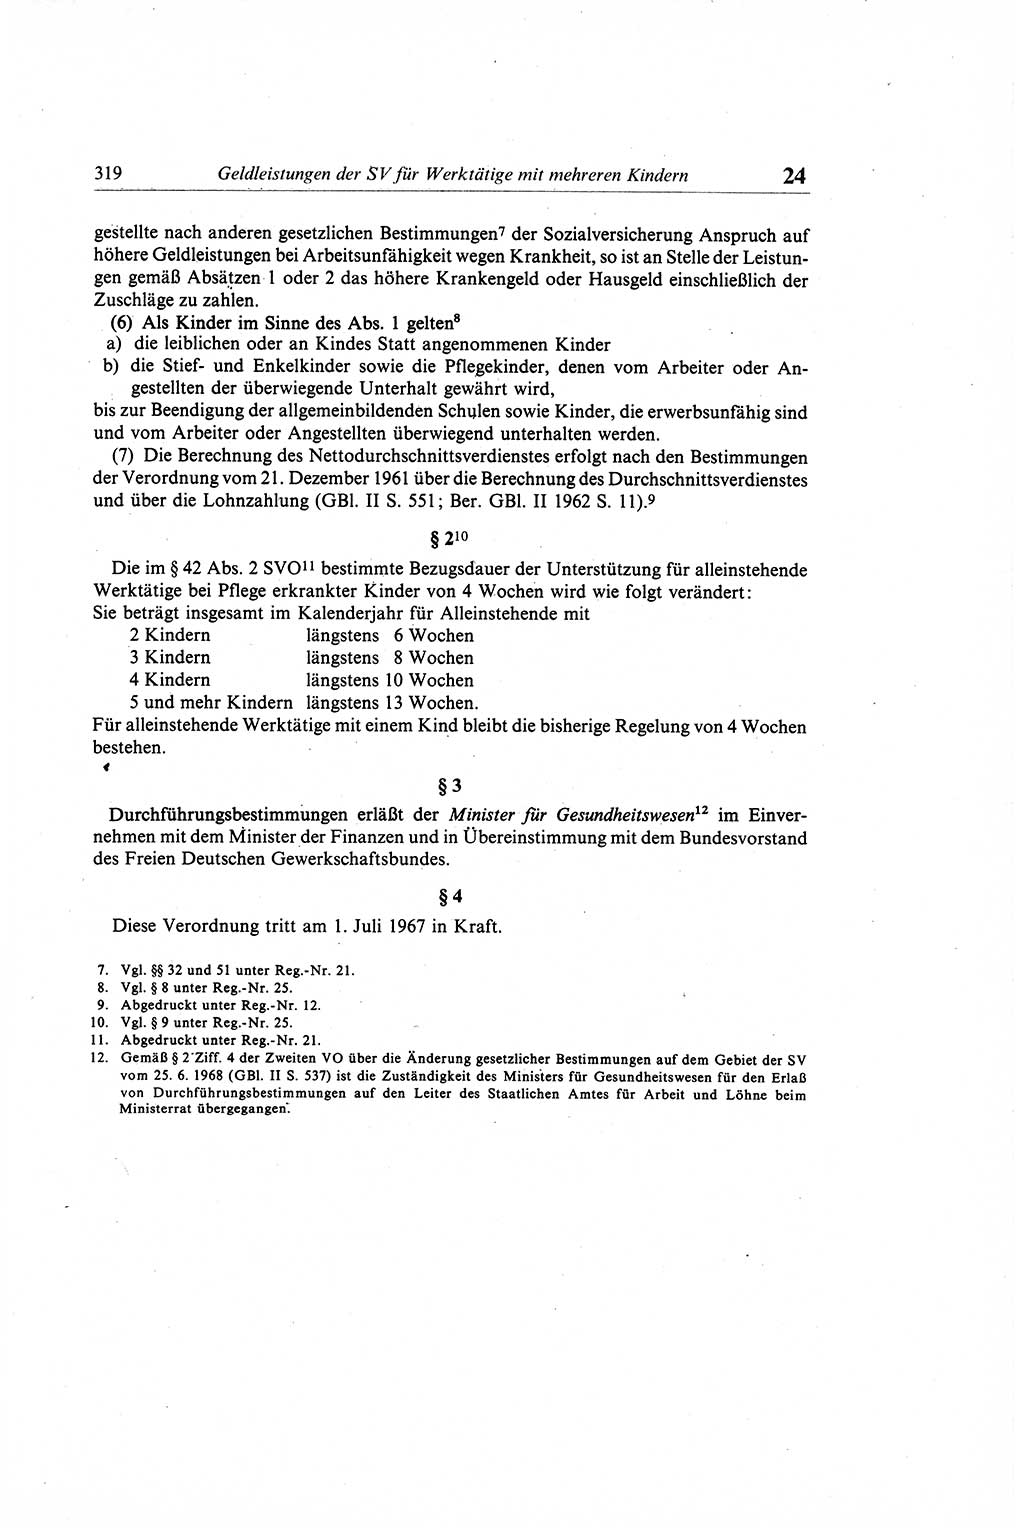 Gesetzbuch der Arbeit (GBA) und andere ausgewählte rechtliche Bestimmungen [Deutsche Demokratische Republik (DDR)] 1968, Seite 319 (GBA DDR 1968, S. 319)